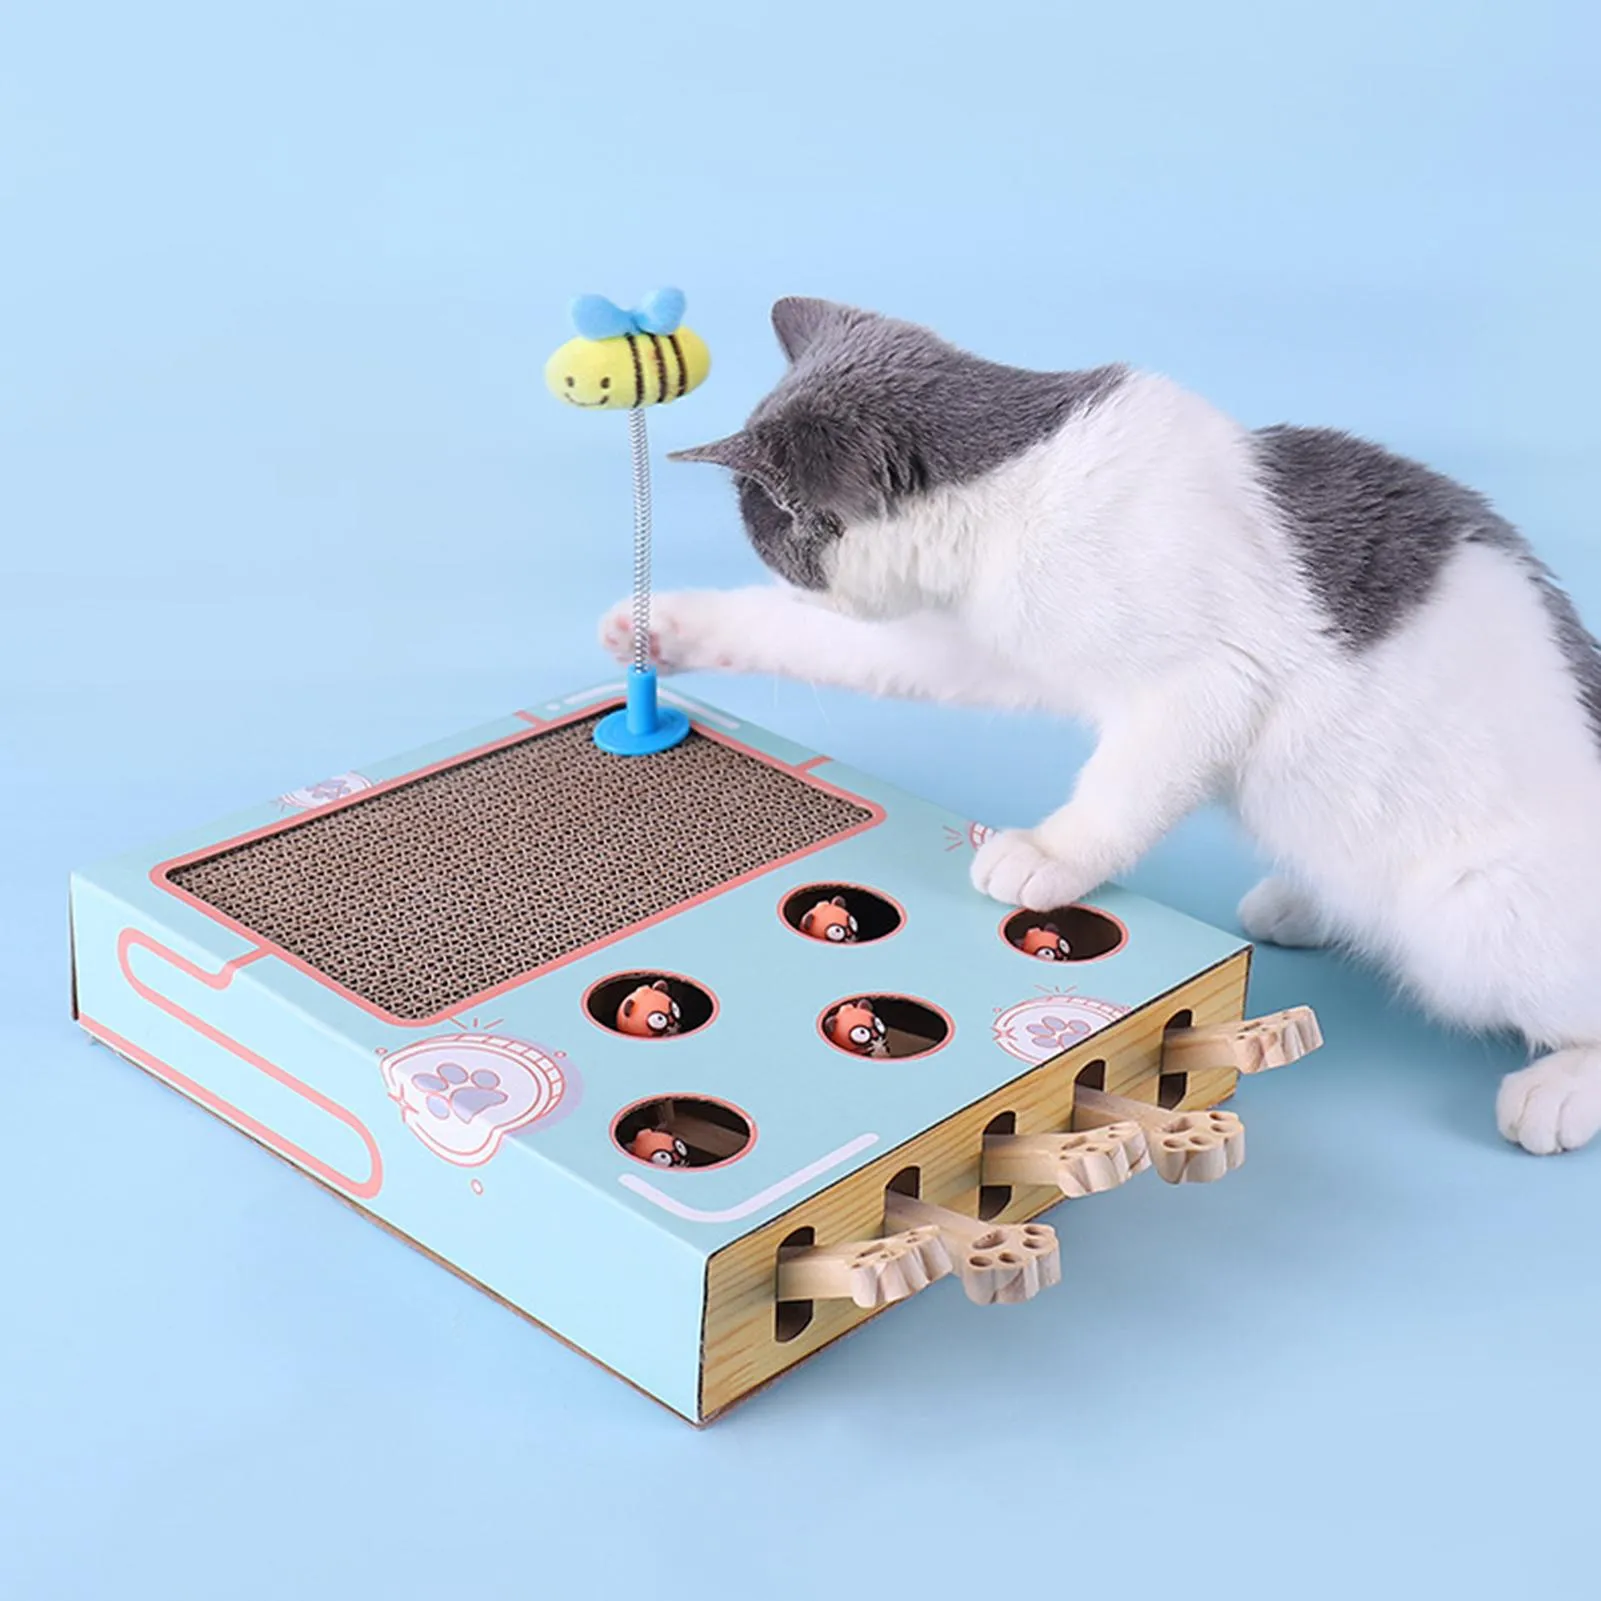 Oyuncaklar 2021 NEW CAT TOY CHASE HUNT Fare Kedi Oyunu Kutusu 3 Scratcher komik kedi çubuğu kedi hit Gophers Interactive Labirent Toy Oyuncak